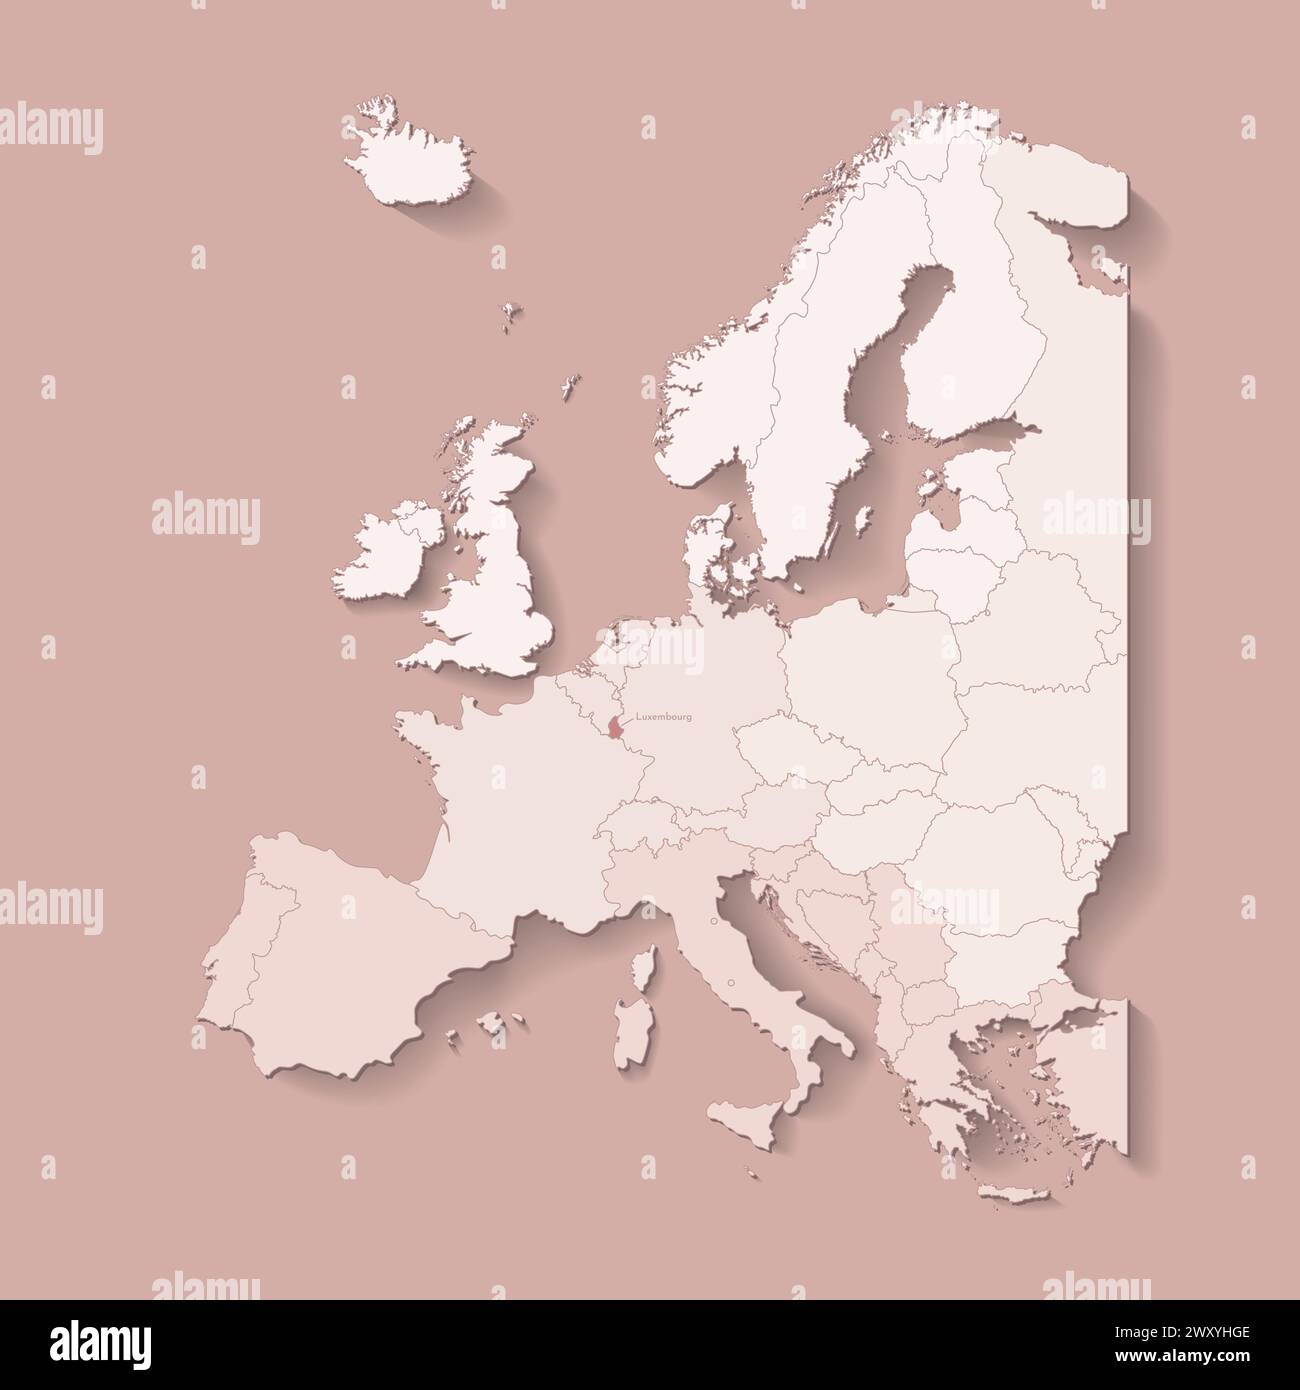 Vektor-Illustration mit europäischem Land mit Grenzen von staaten und markiertem Land Luxemburg. Politische Karte in braunen Farben mit West, Süd und etc Stock Vektor